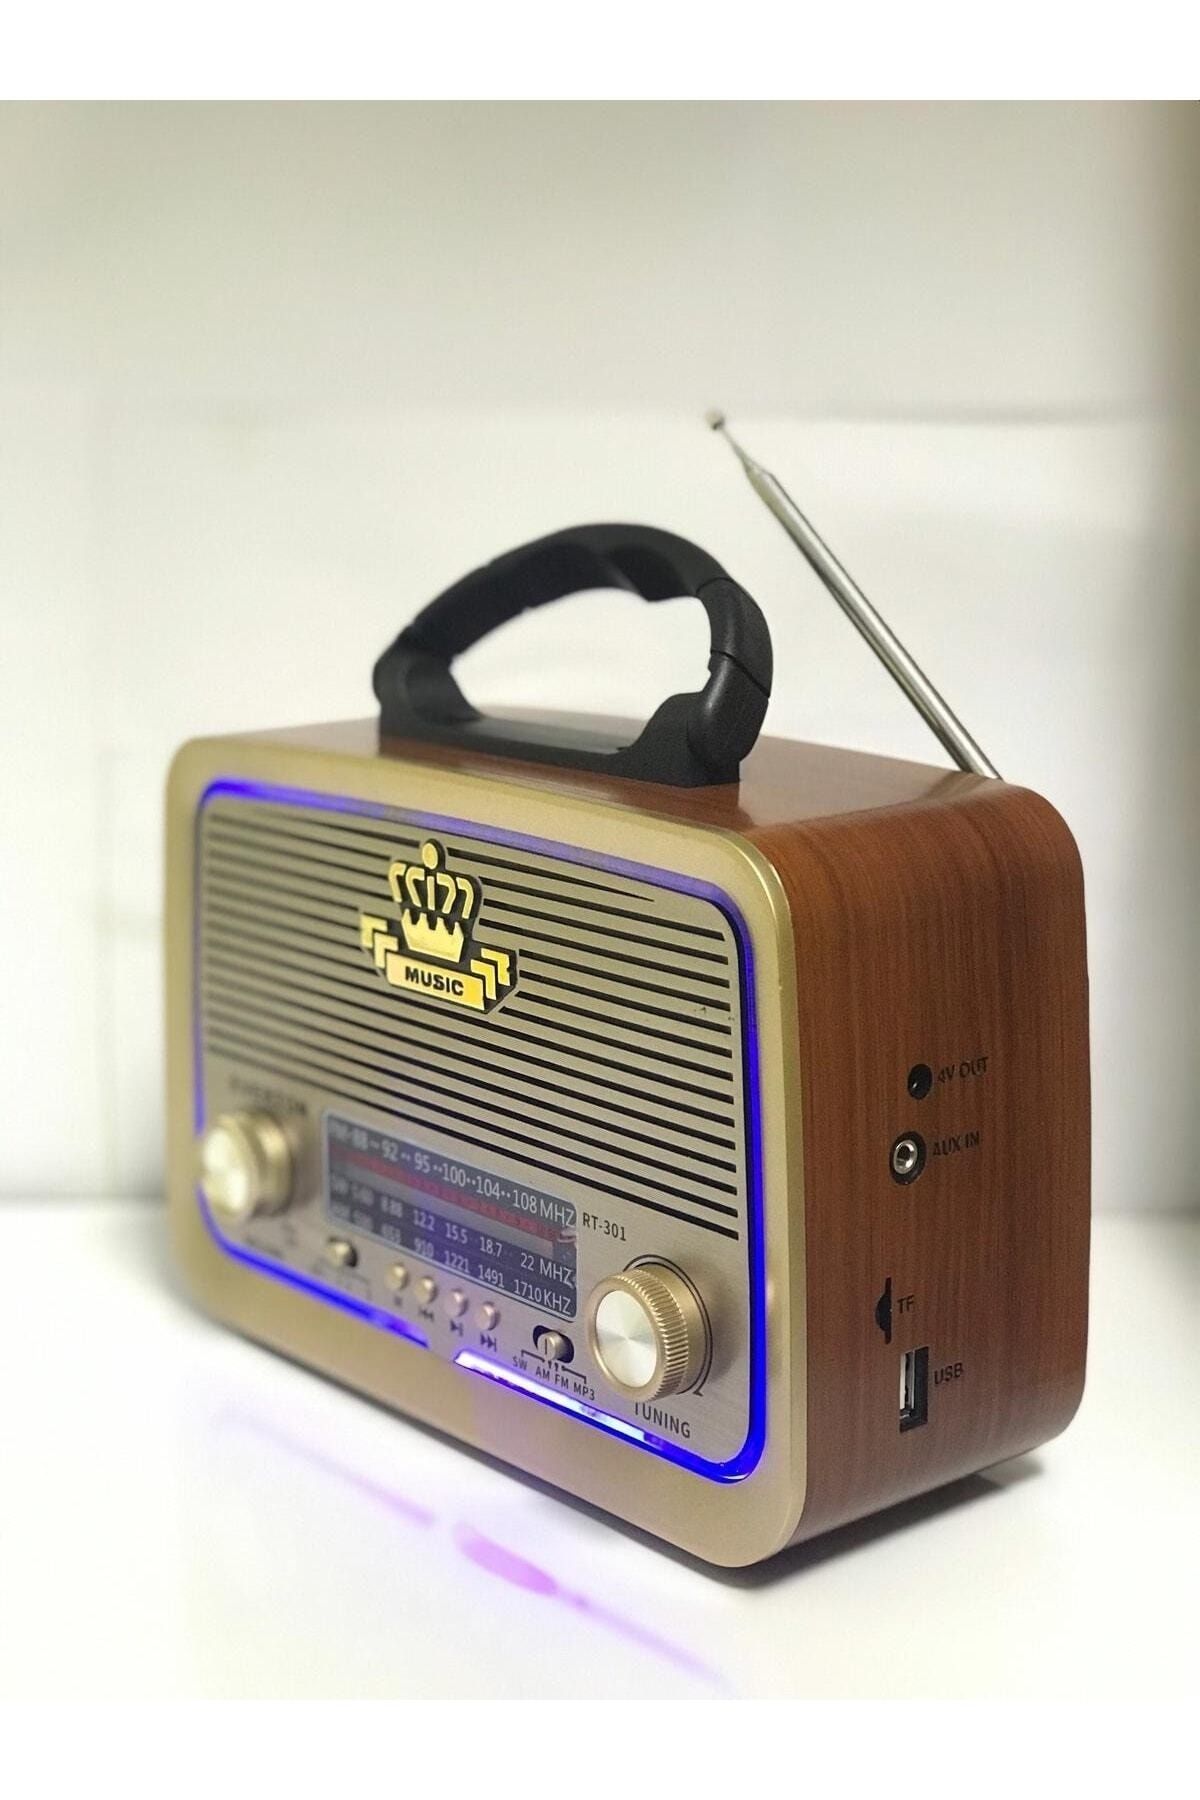 Everton Shop-rt-301 Nostaljik Görünümlü Kırmızı Bluetoothlu Mp3 Çalar Radyo Müzik Kutusu - Kırmızı